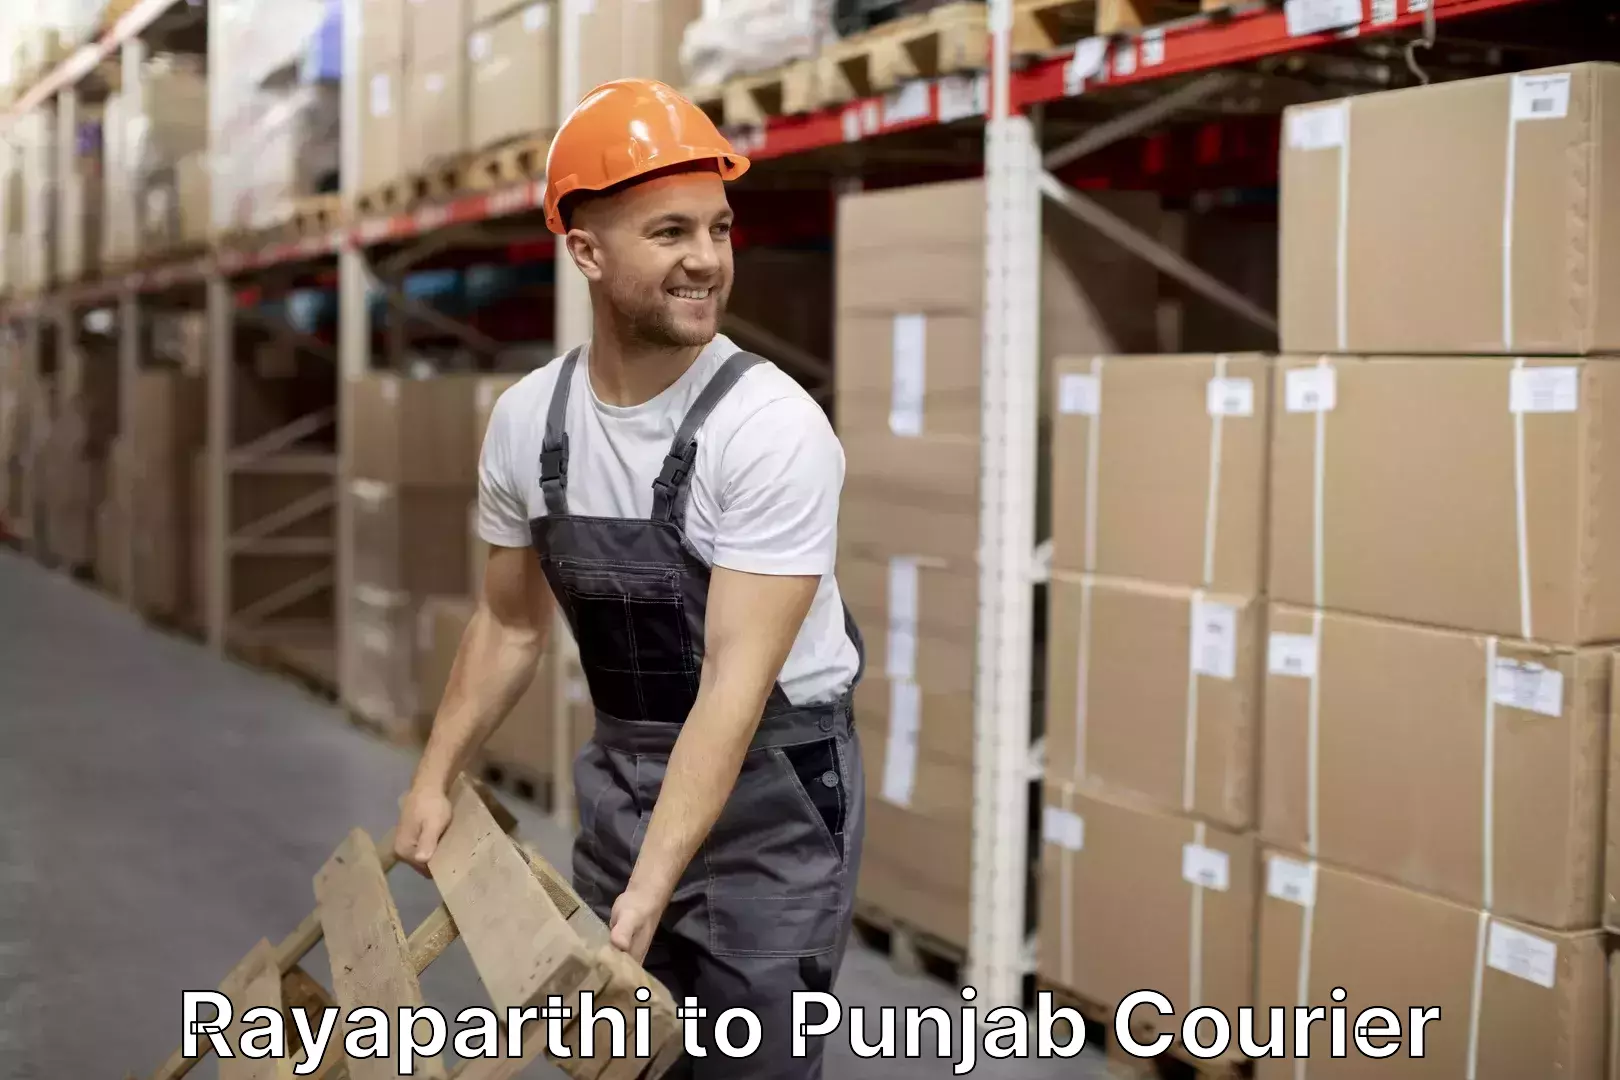 Expert furniture movers Rayaparthi to Punjab